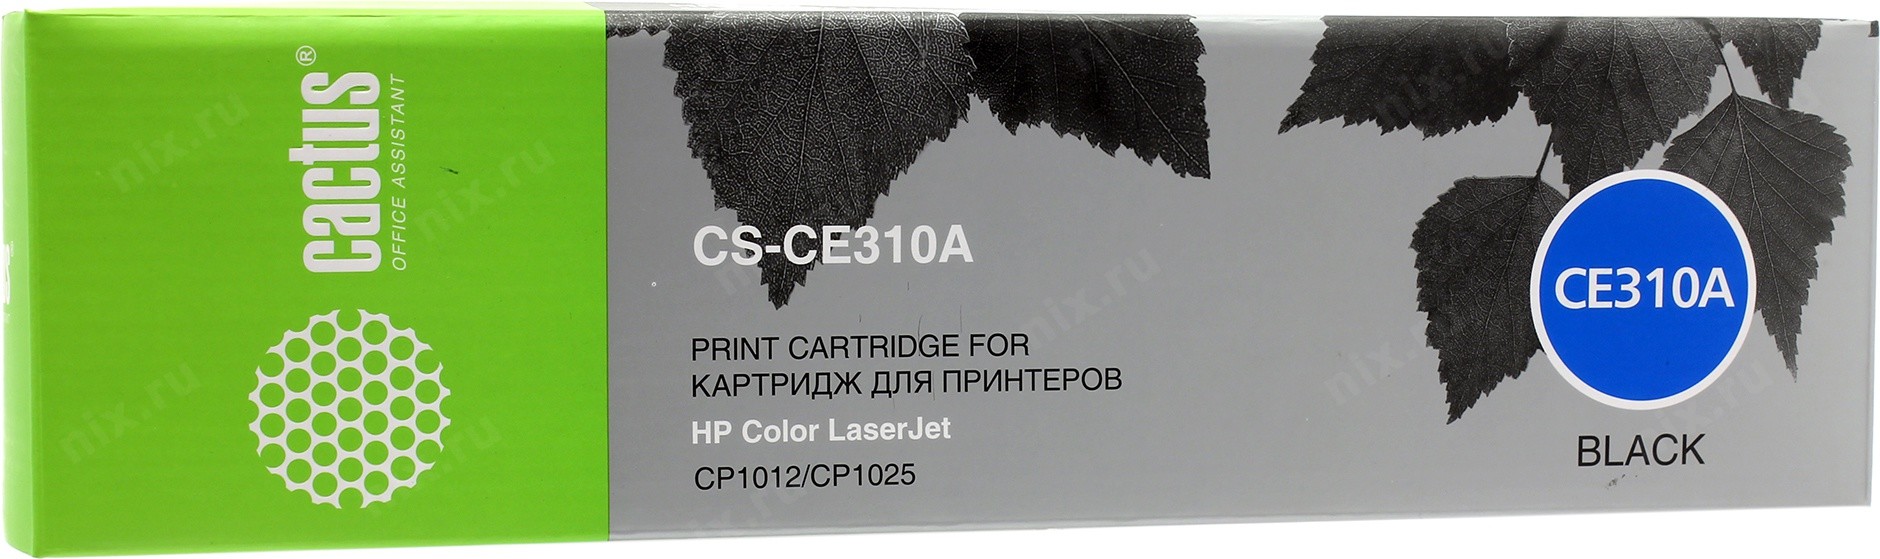 Картриджи и расходники Картридж лазерный HP Cactus CS-CE310A